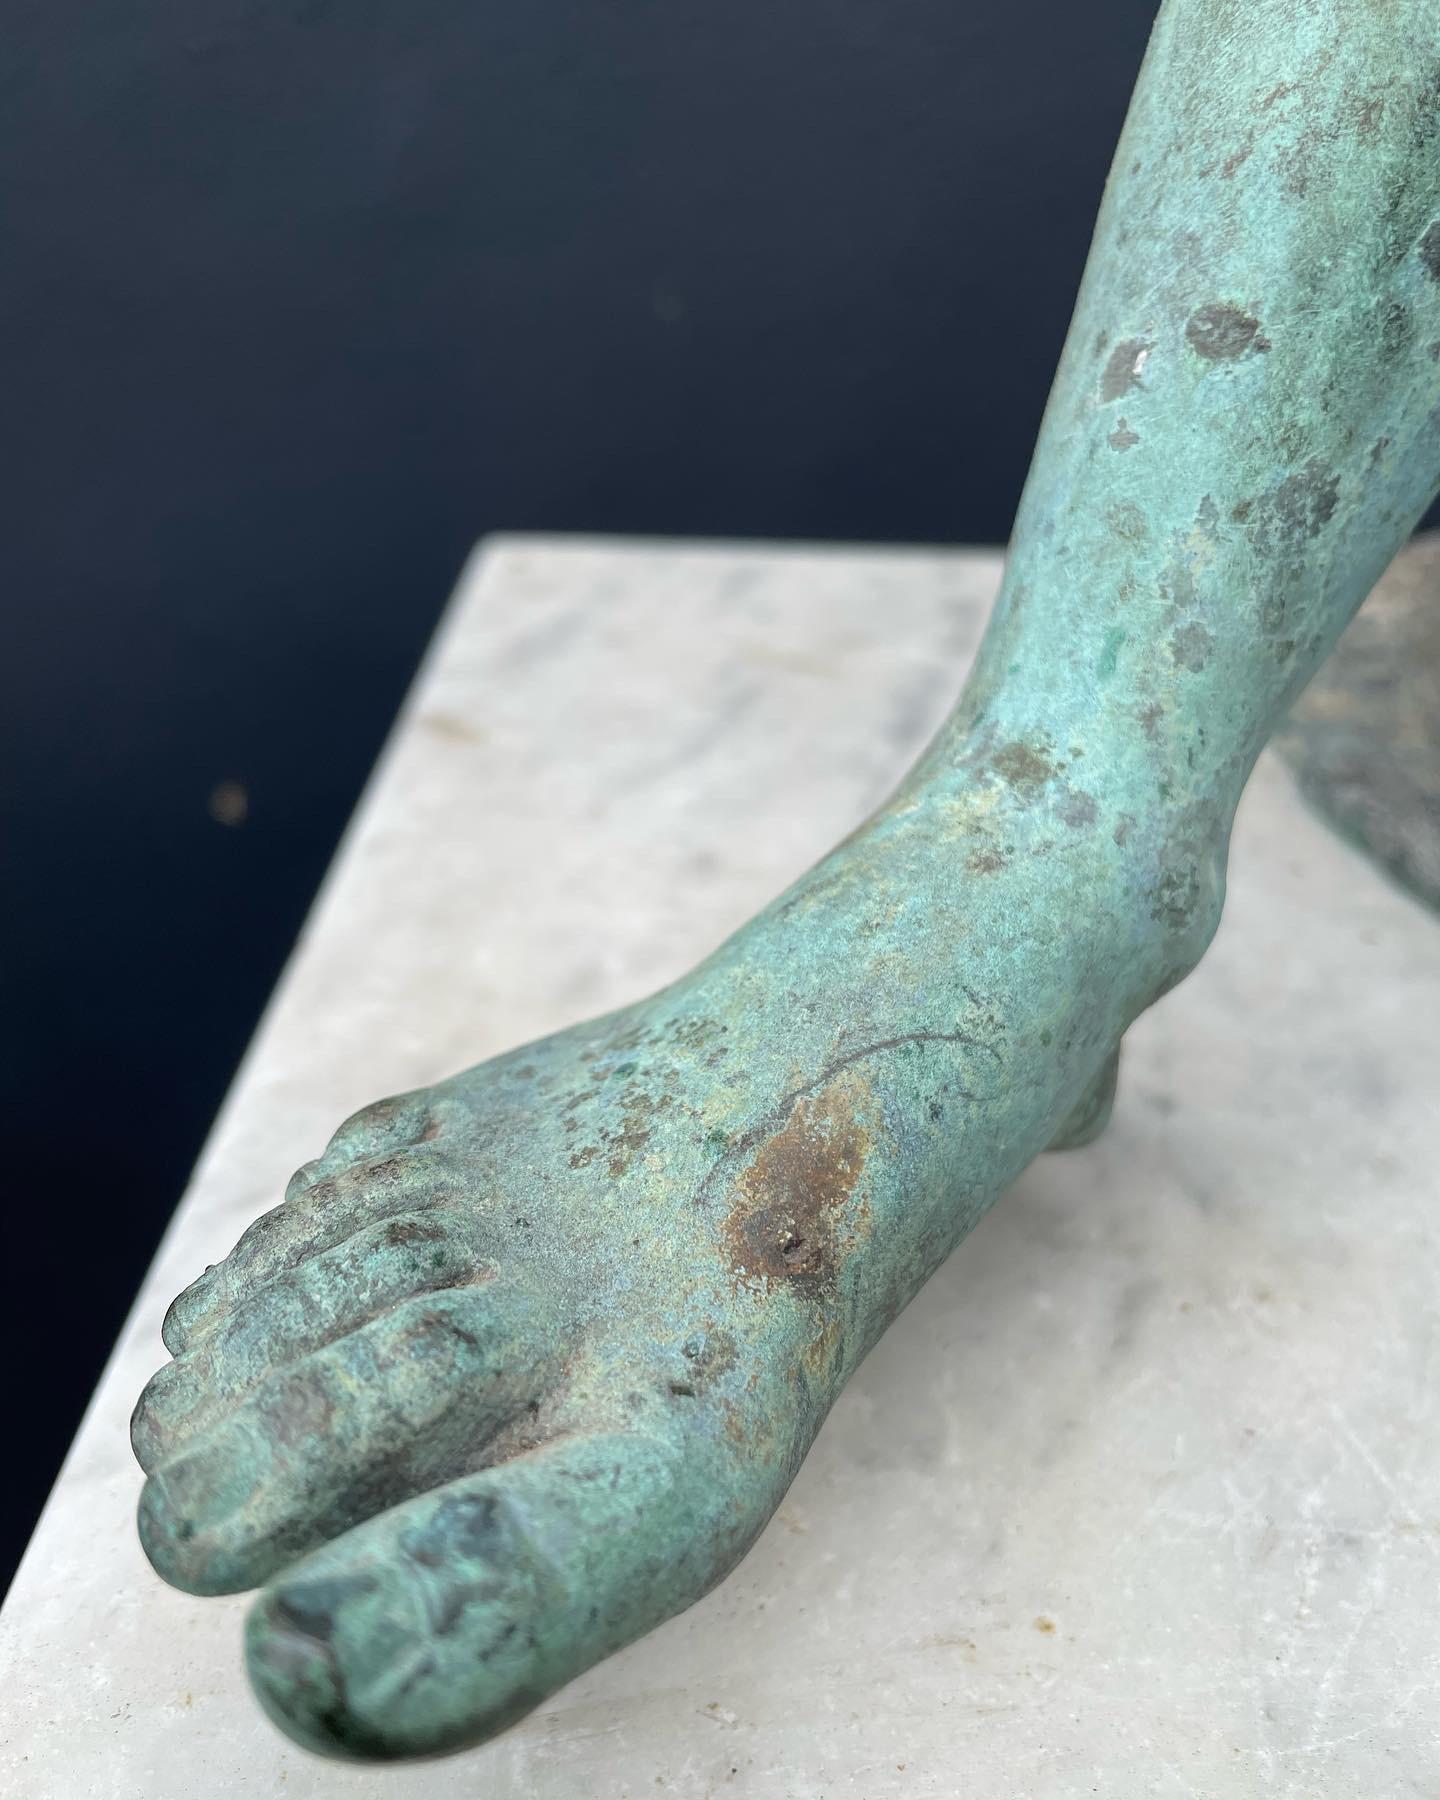 Große Bronzeskulptur des Hermes, auf einem Brunnen sitzend, nach der Antike, mit einer schönen grünen Patina und auf einem weißen Marmorblock montiert.

Dieses Stück würde sich gut in eine Grand-Tour-Sammlung einfügen.